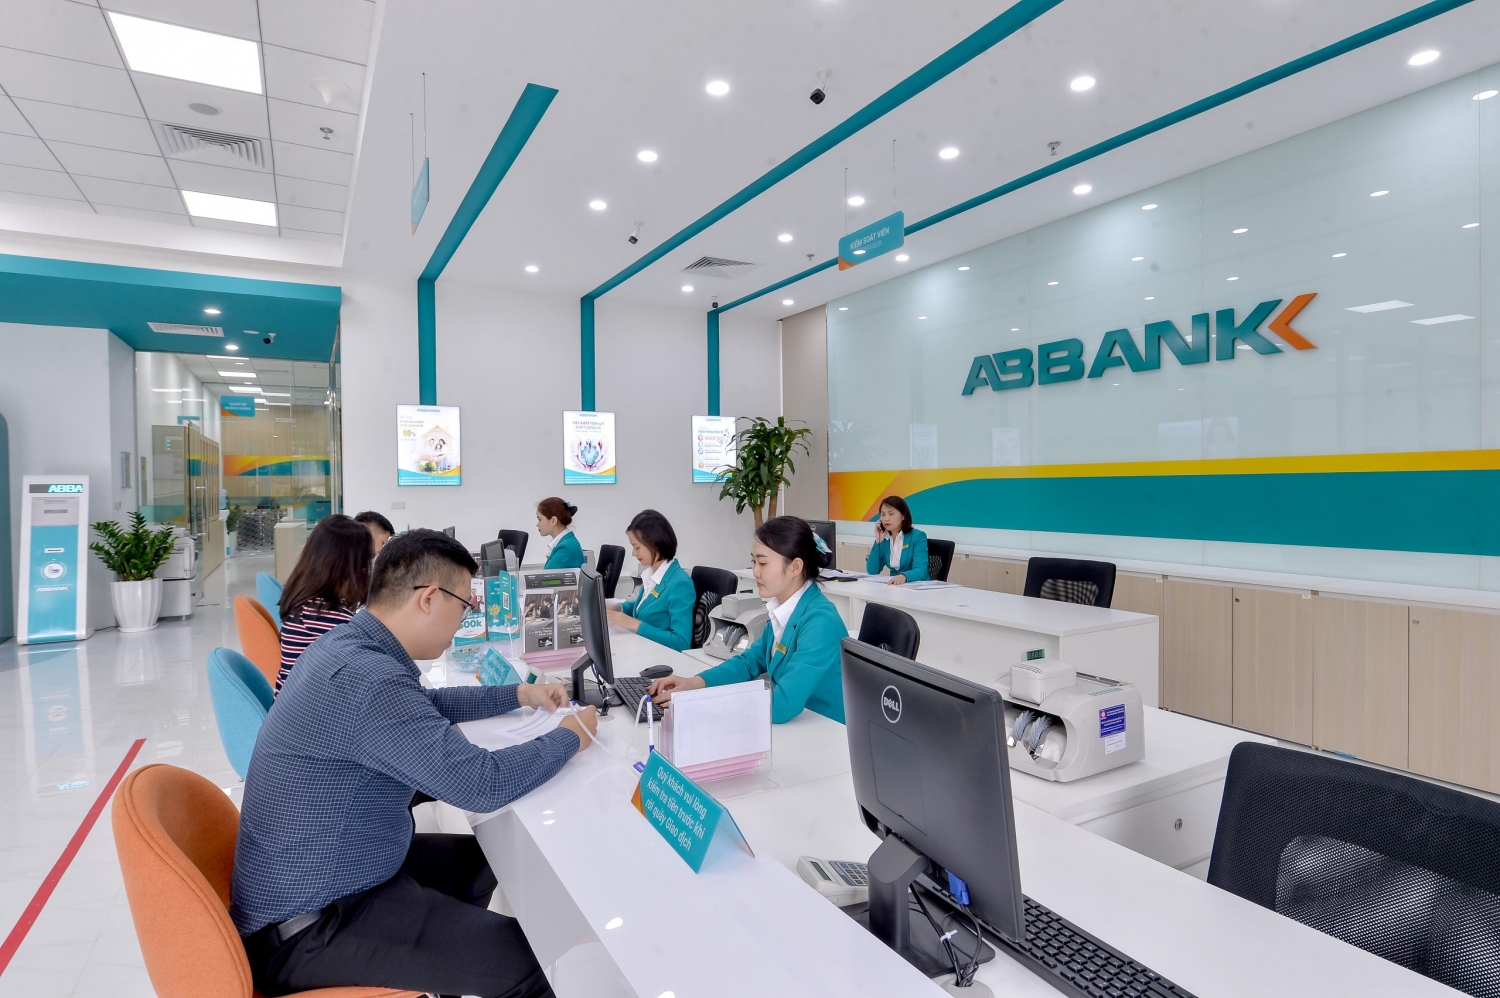 Tin ngân hàng ngày 7/4: Vì sao lợi nhuận ABBank giảm trong năm 2022?